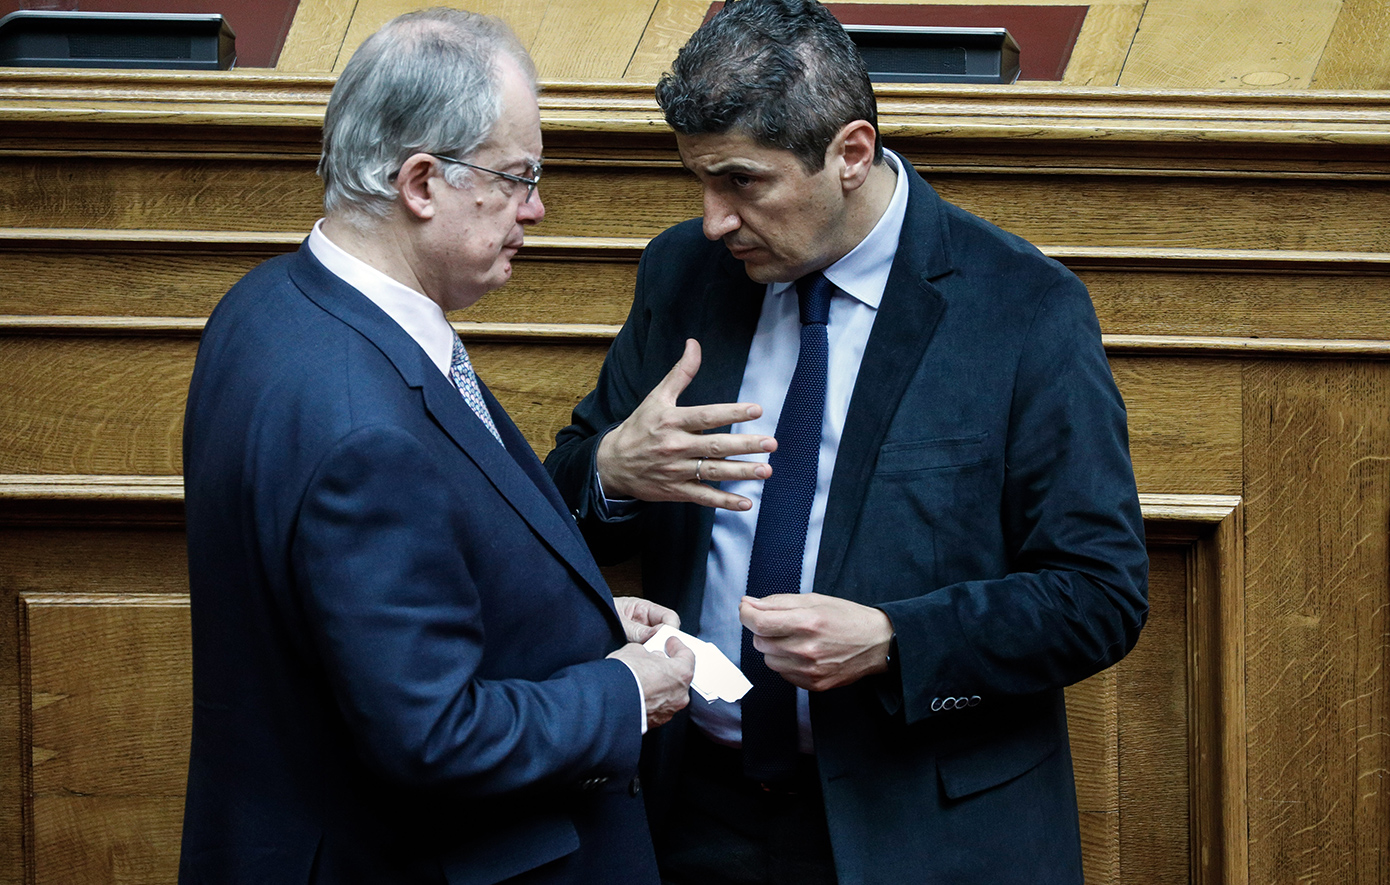 Τασούλας: Αποκλείω τον Αυγενάκη από τις επόμενες συνεδριάσεις της Βουλής, όλη η Ελλάδα είδε και αποδοκιμάζει τη συμπεριφορά του